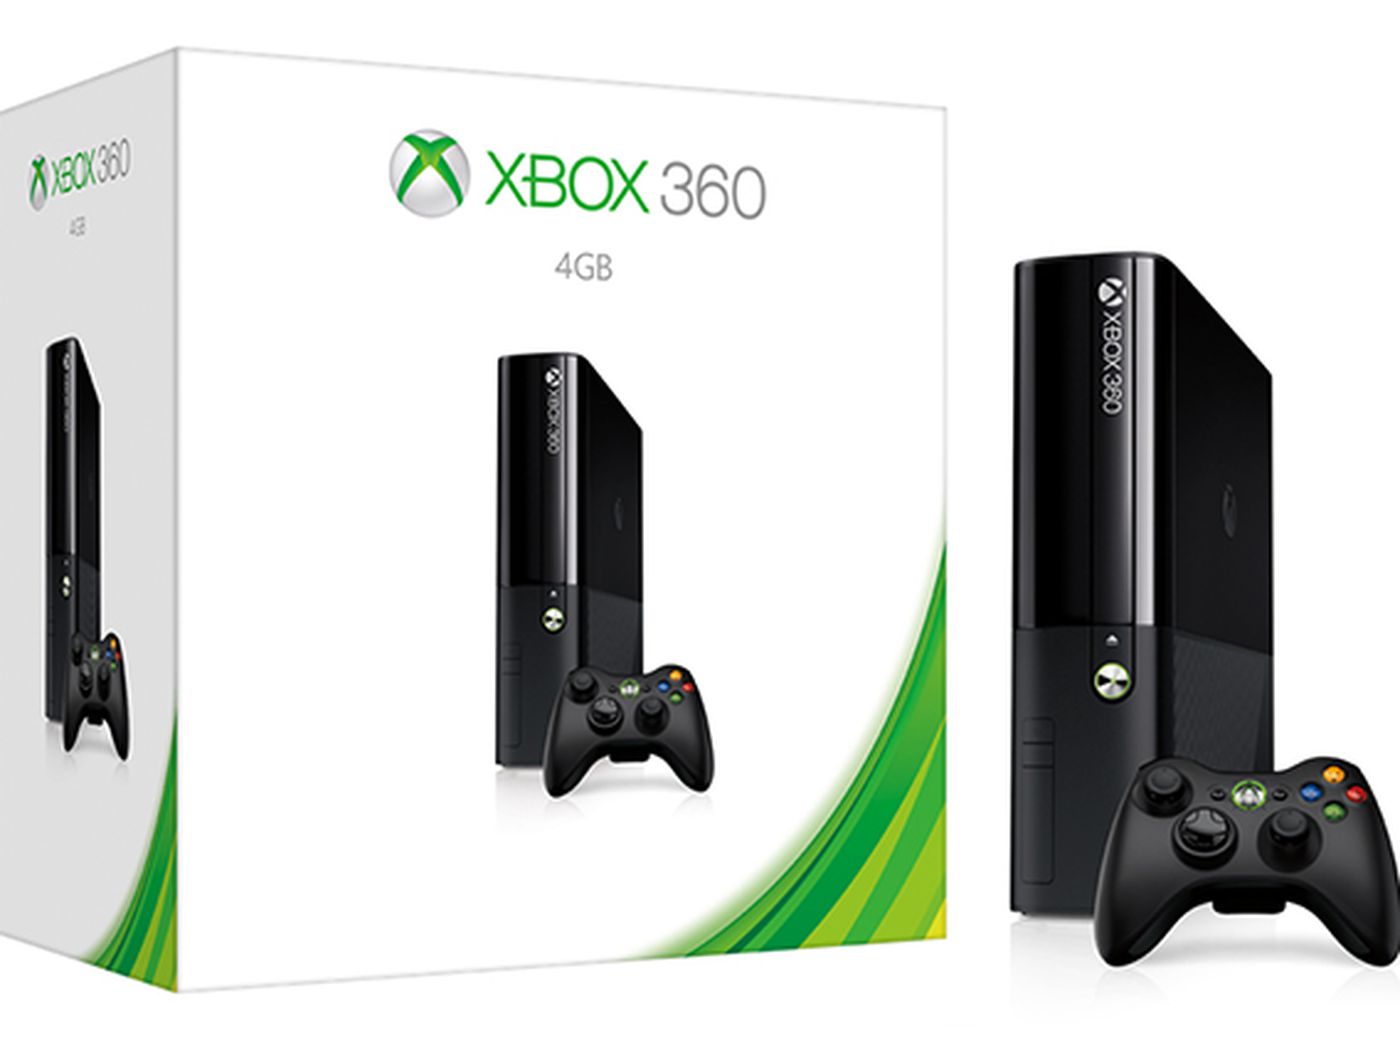 3 Xbox 360 Xbox 360 4GB Xbox 380 XDX300